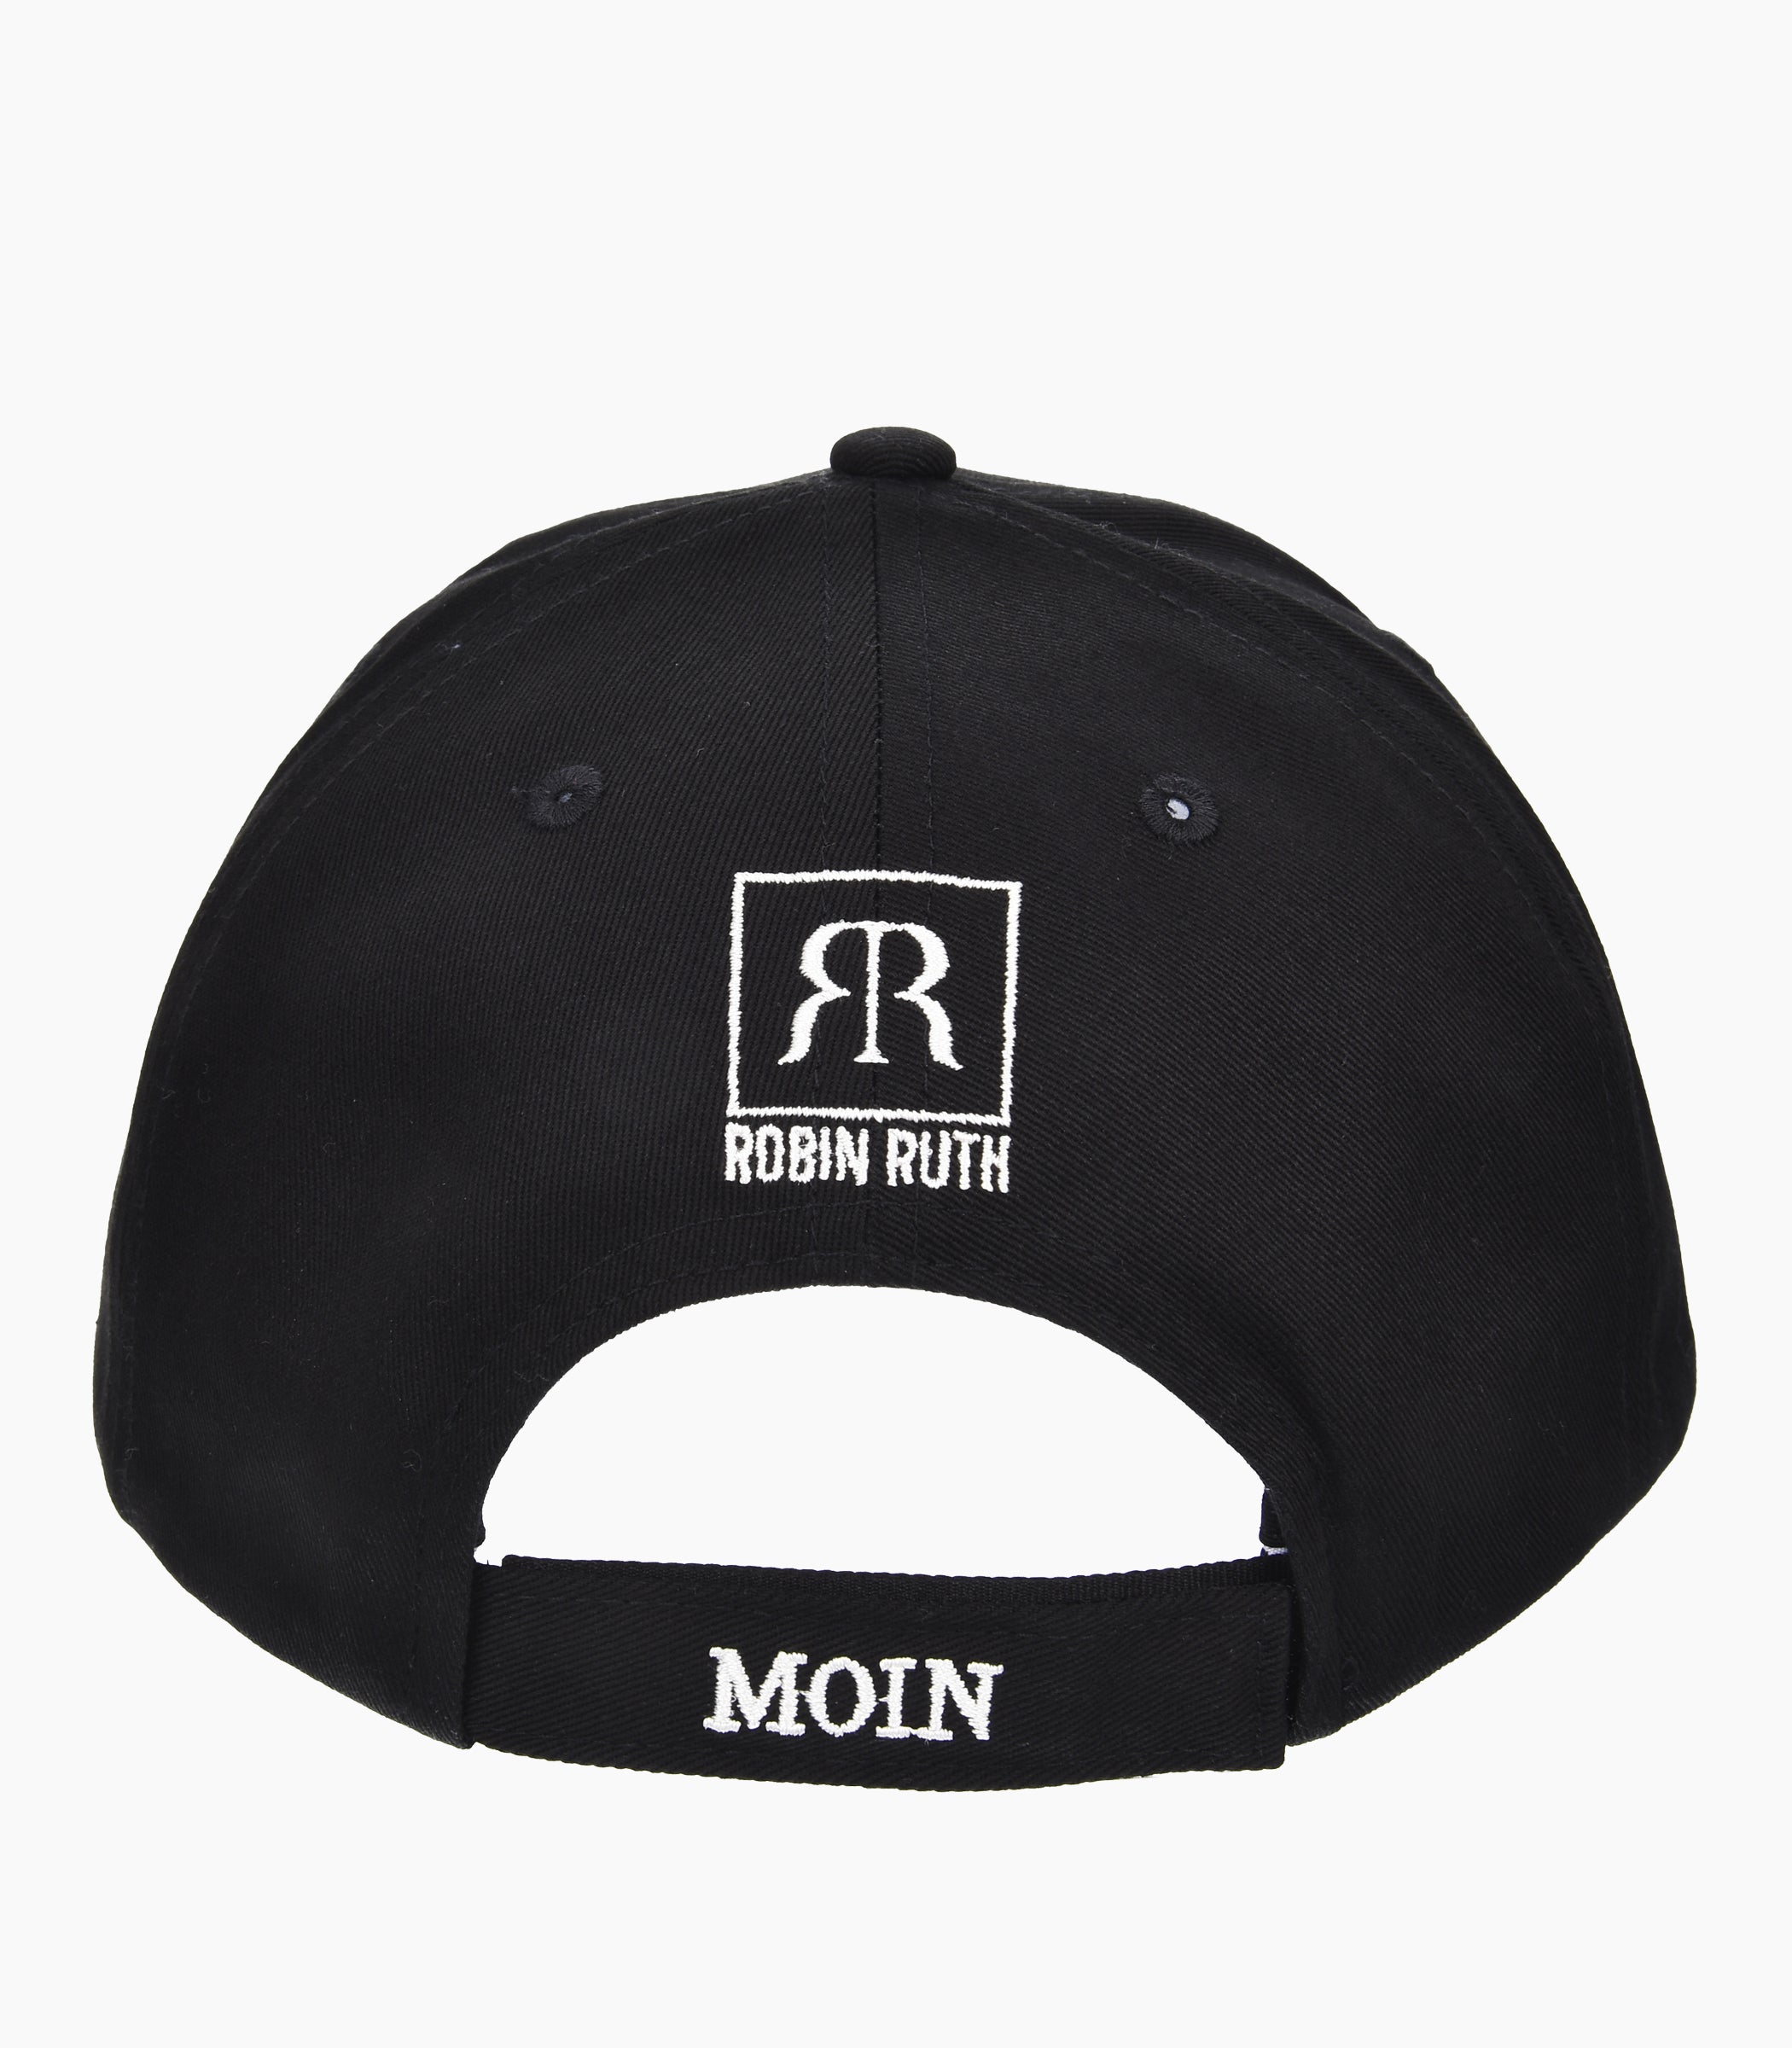 Moin Moin Cap - Robin Ruth